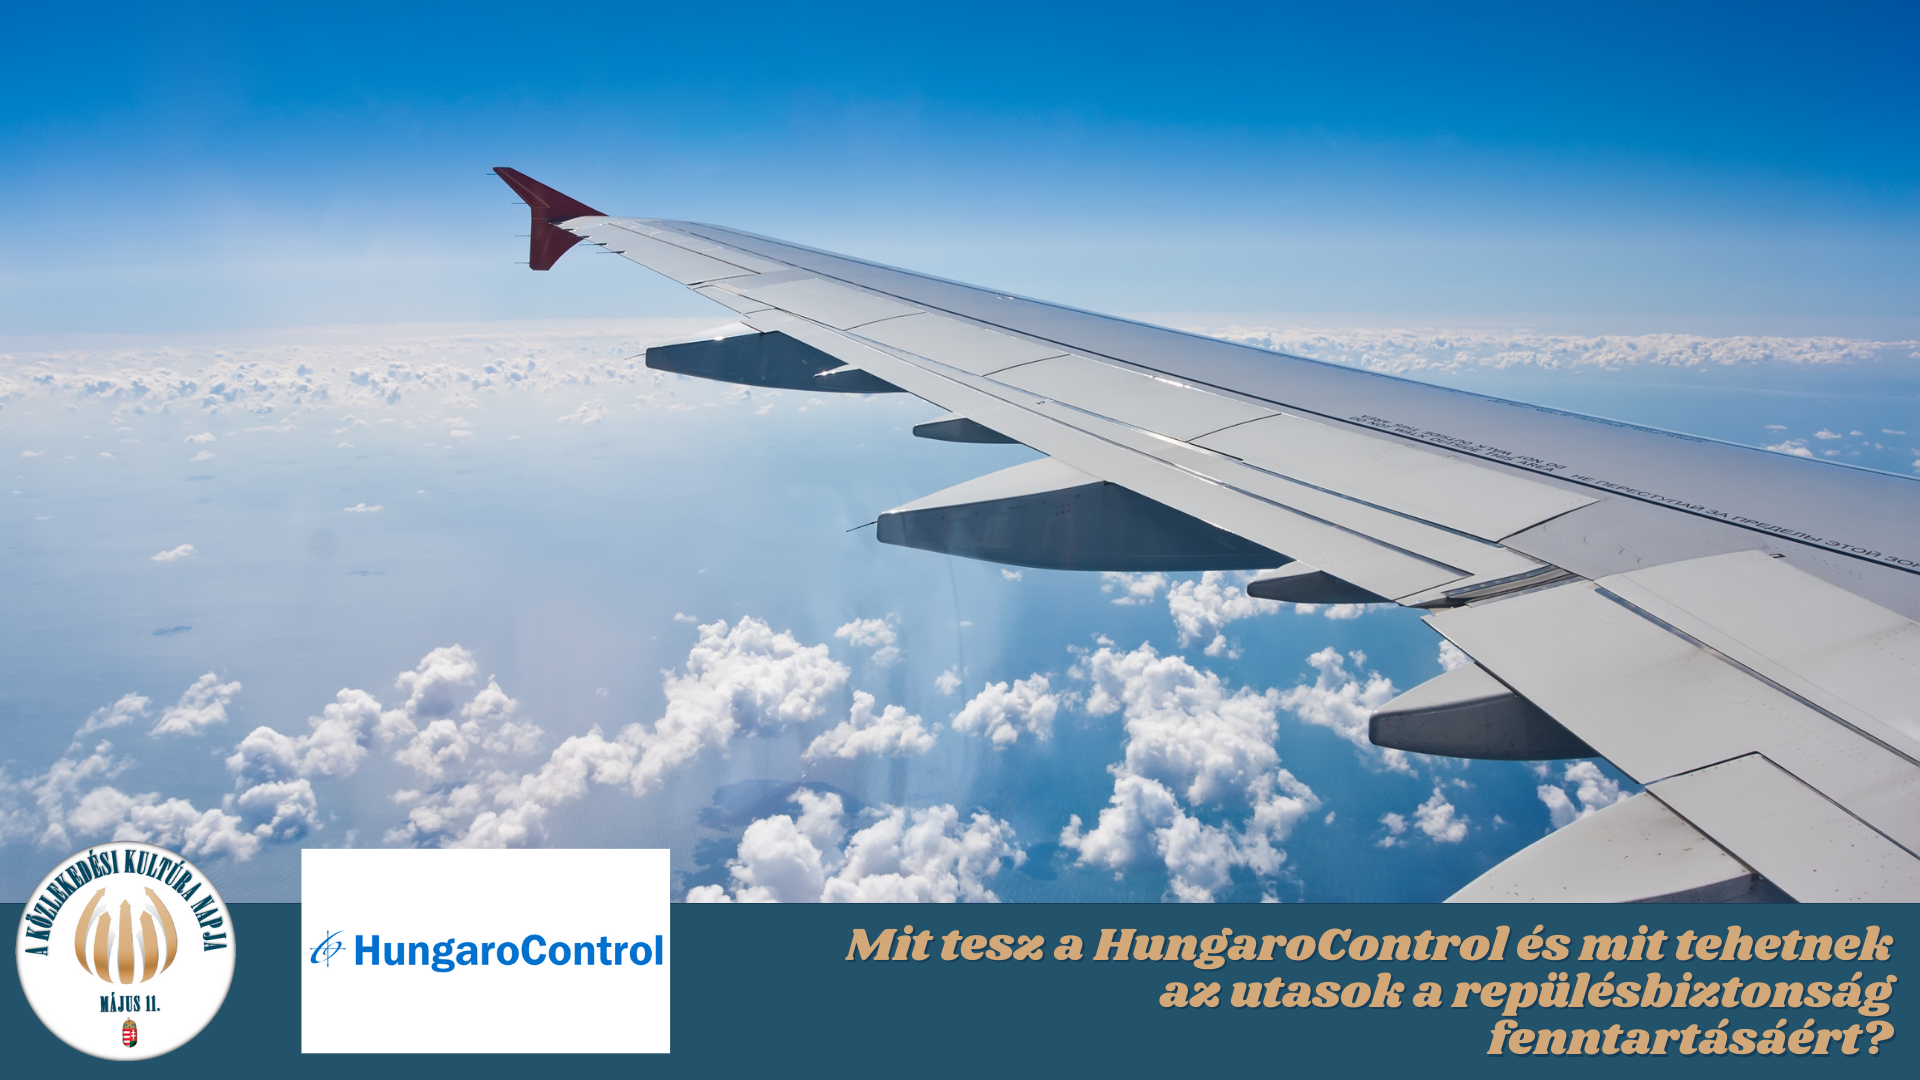 Mit tesz a HungaroControl és mit tehetnek az utasok a repülésbiztonság fenntartásáért?